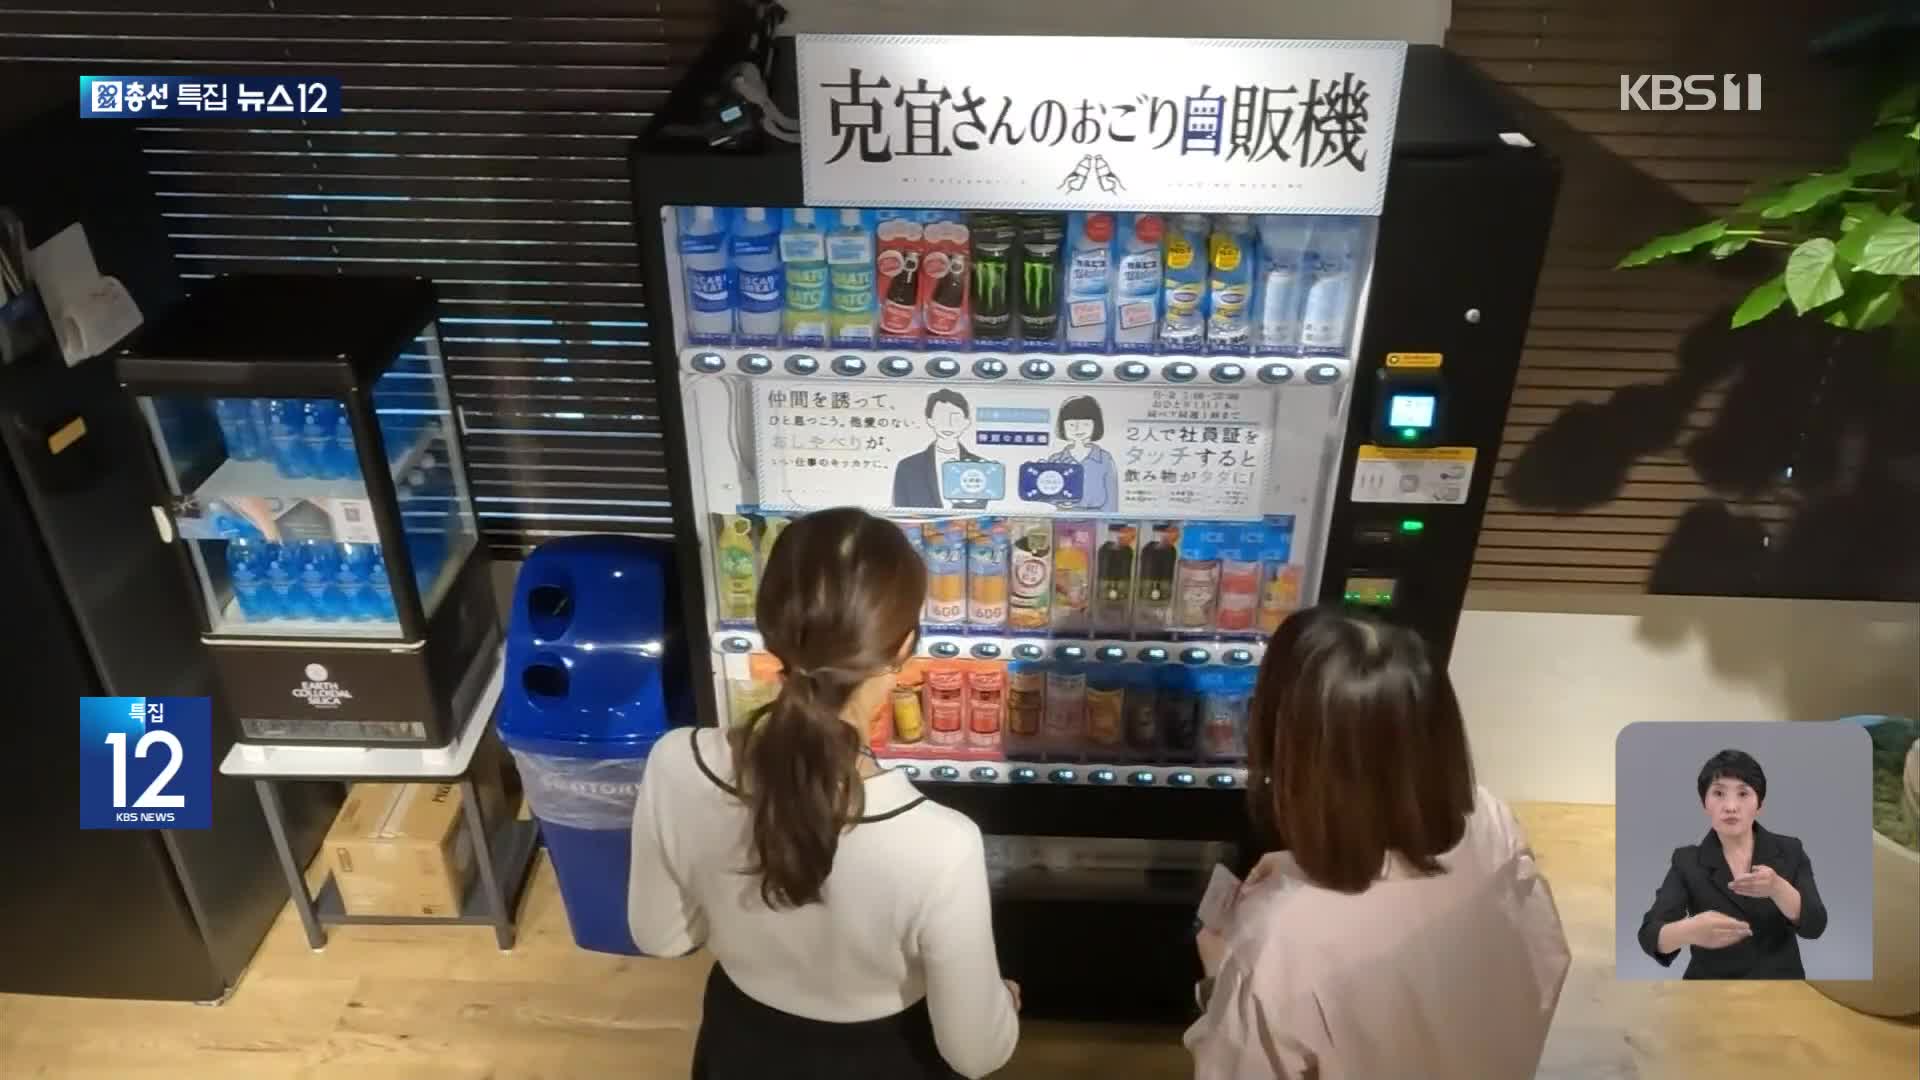 일본, ‘2명이 동시에 이용하면 무료’ 자판기